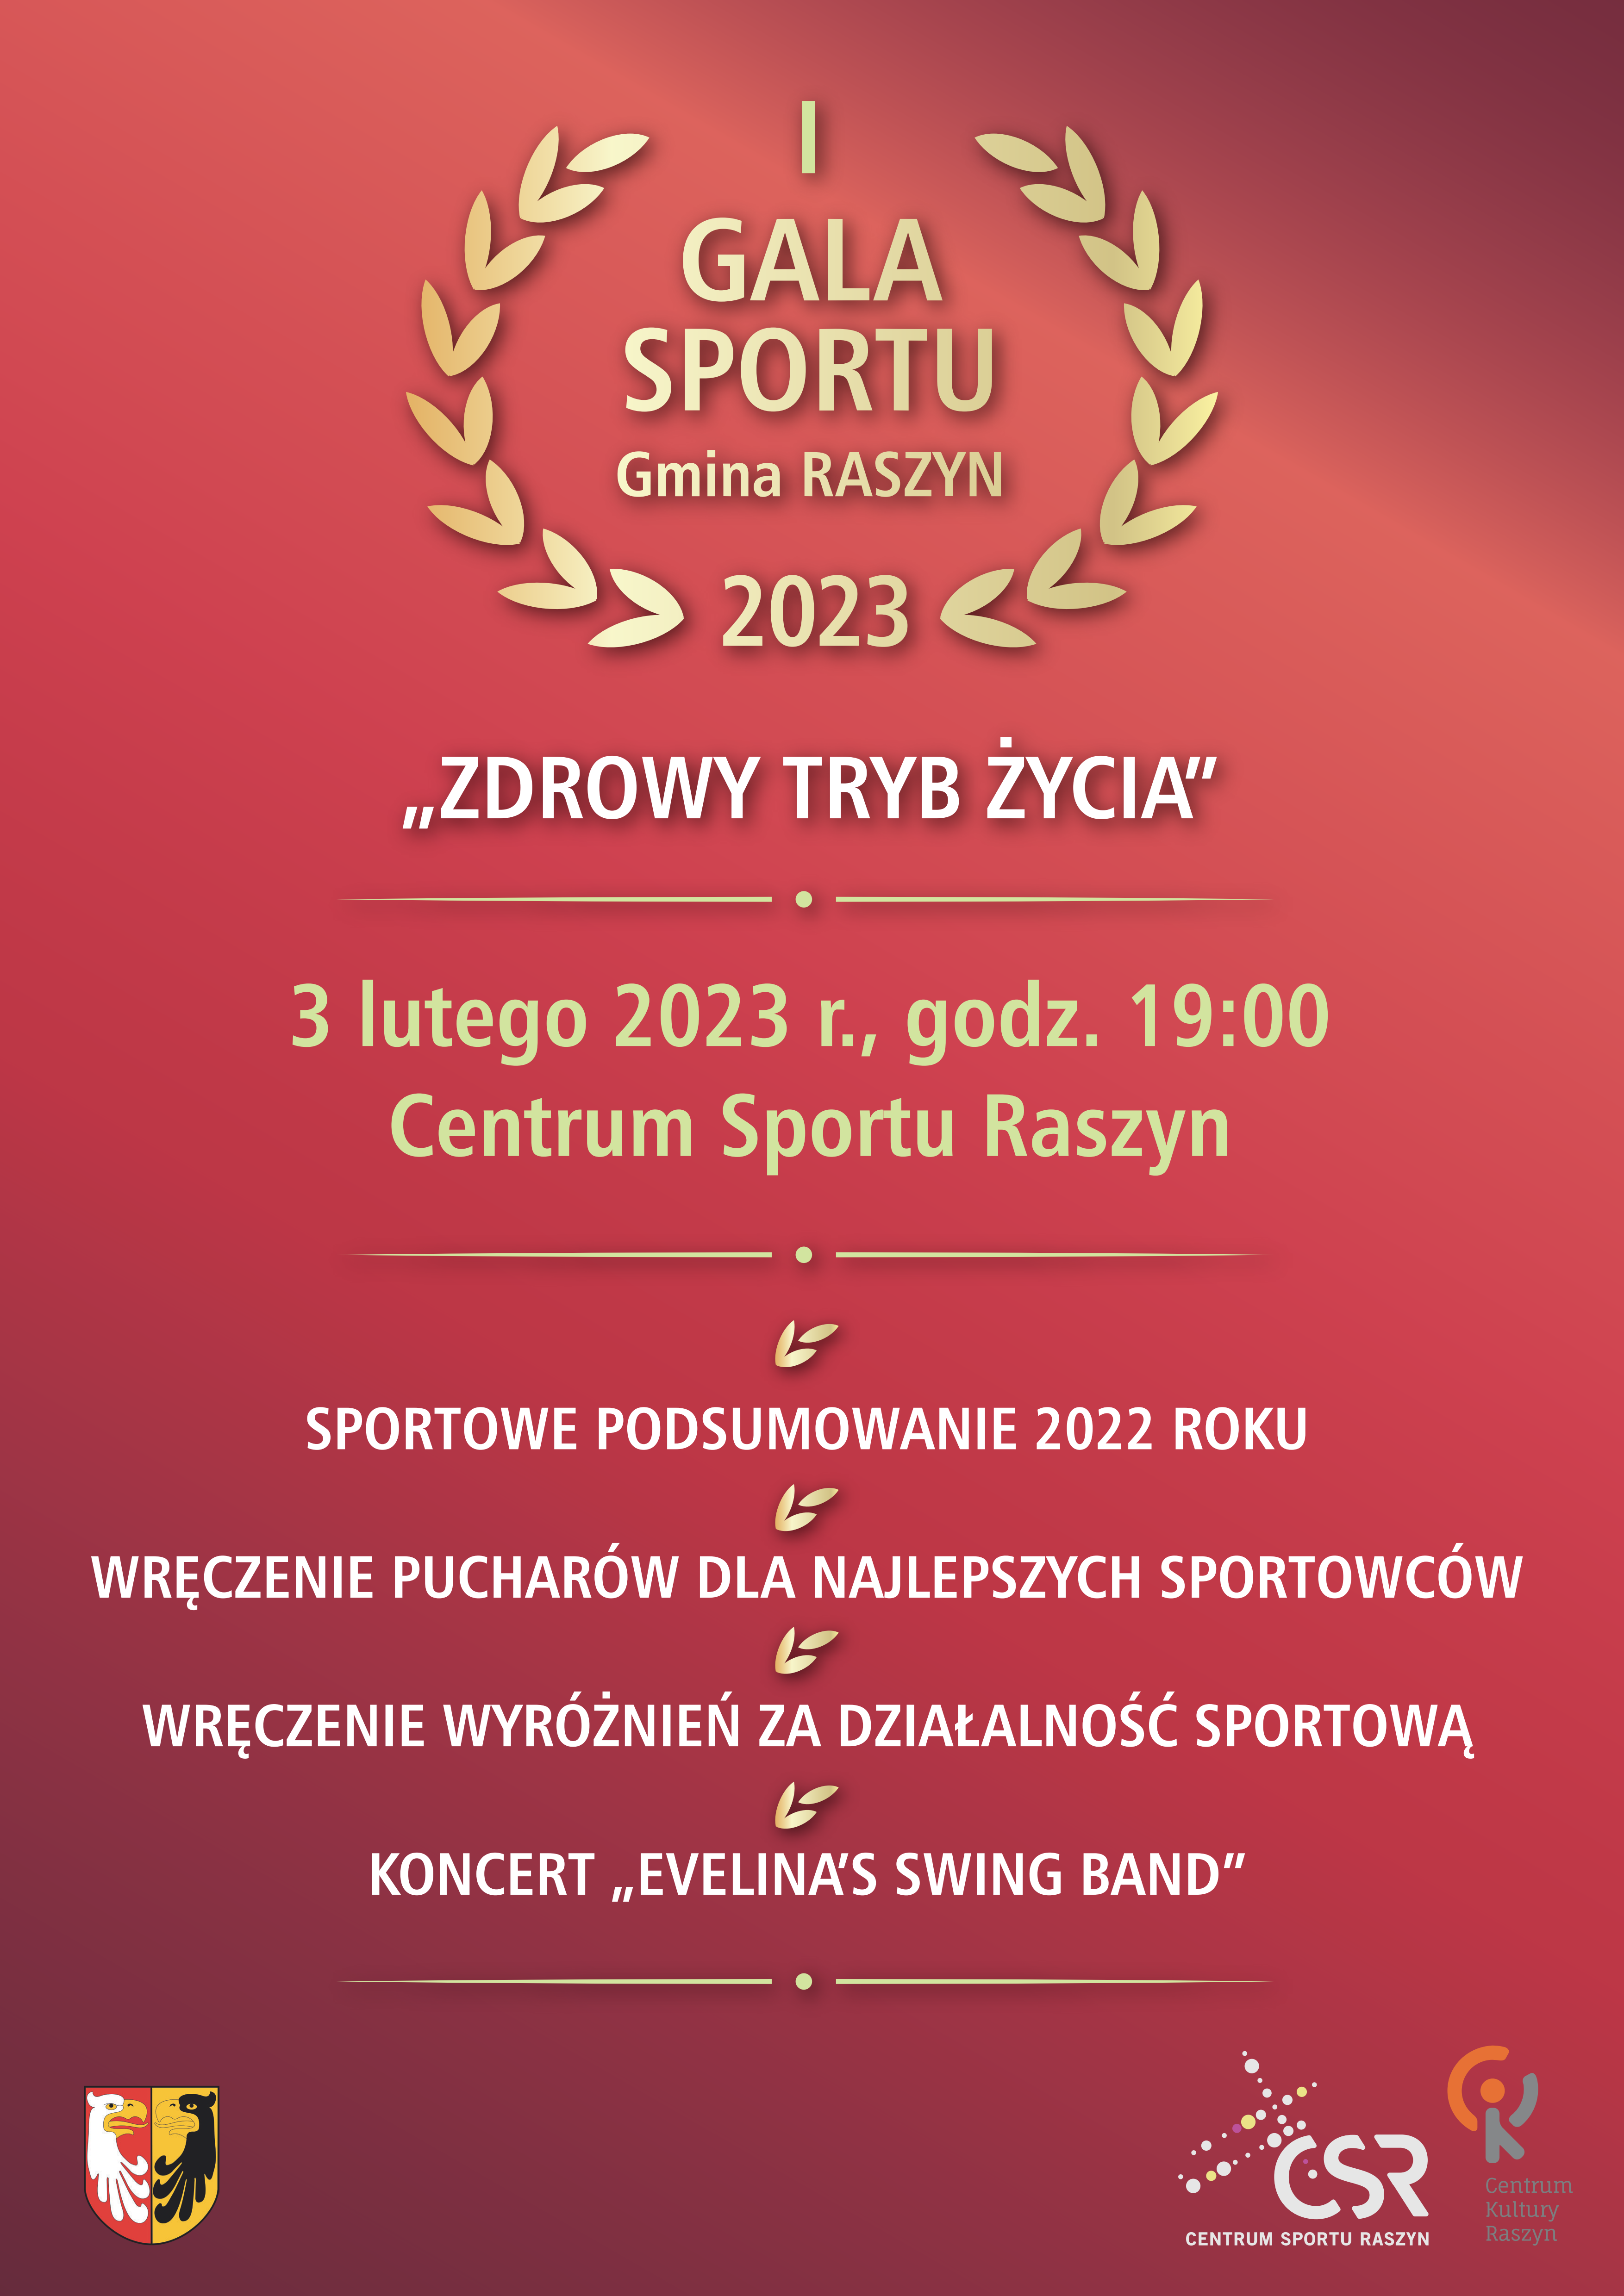 Plakat: I Gala Sportu "ZDROWY TRYB ŻYCIA" data: 03.02.2023 godz. 19:00 miejsce: CSR